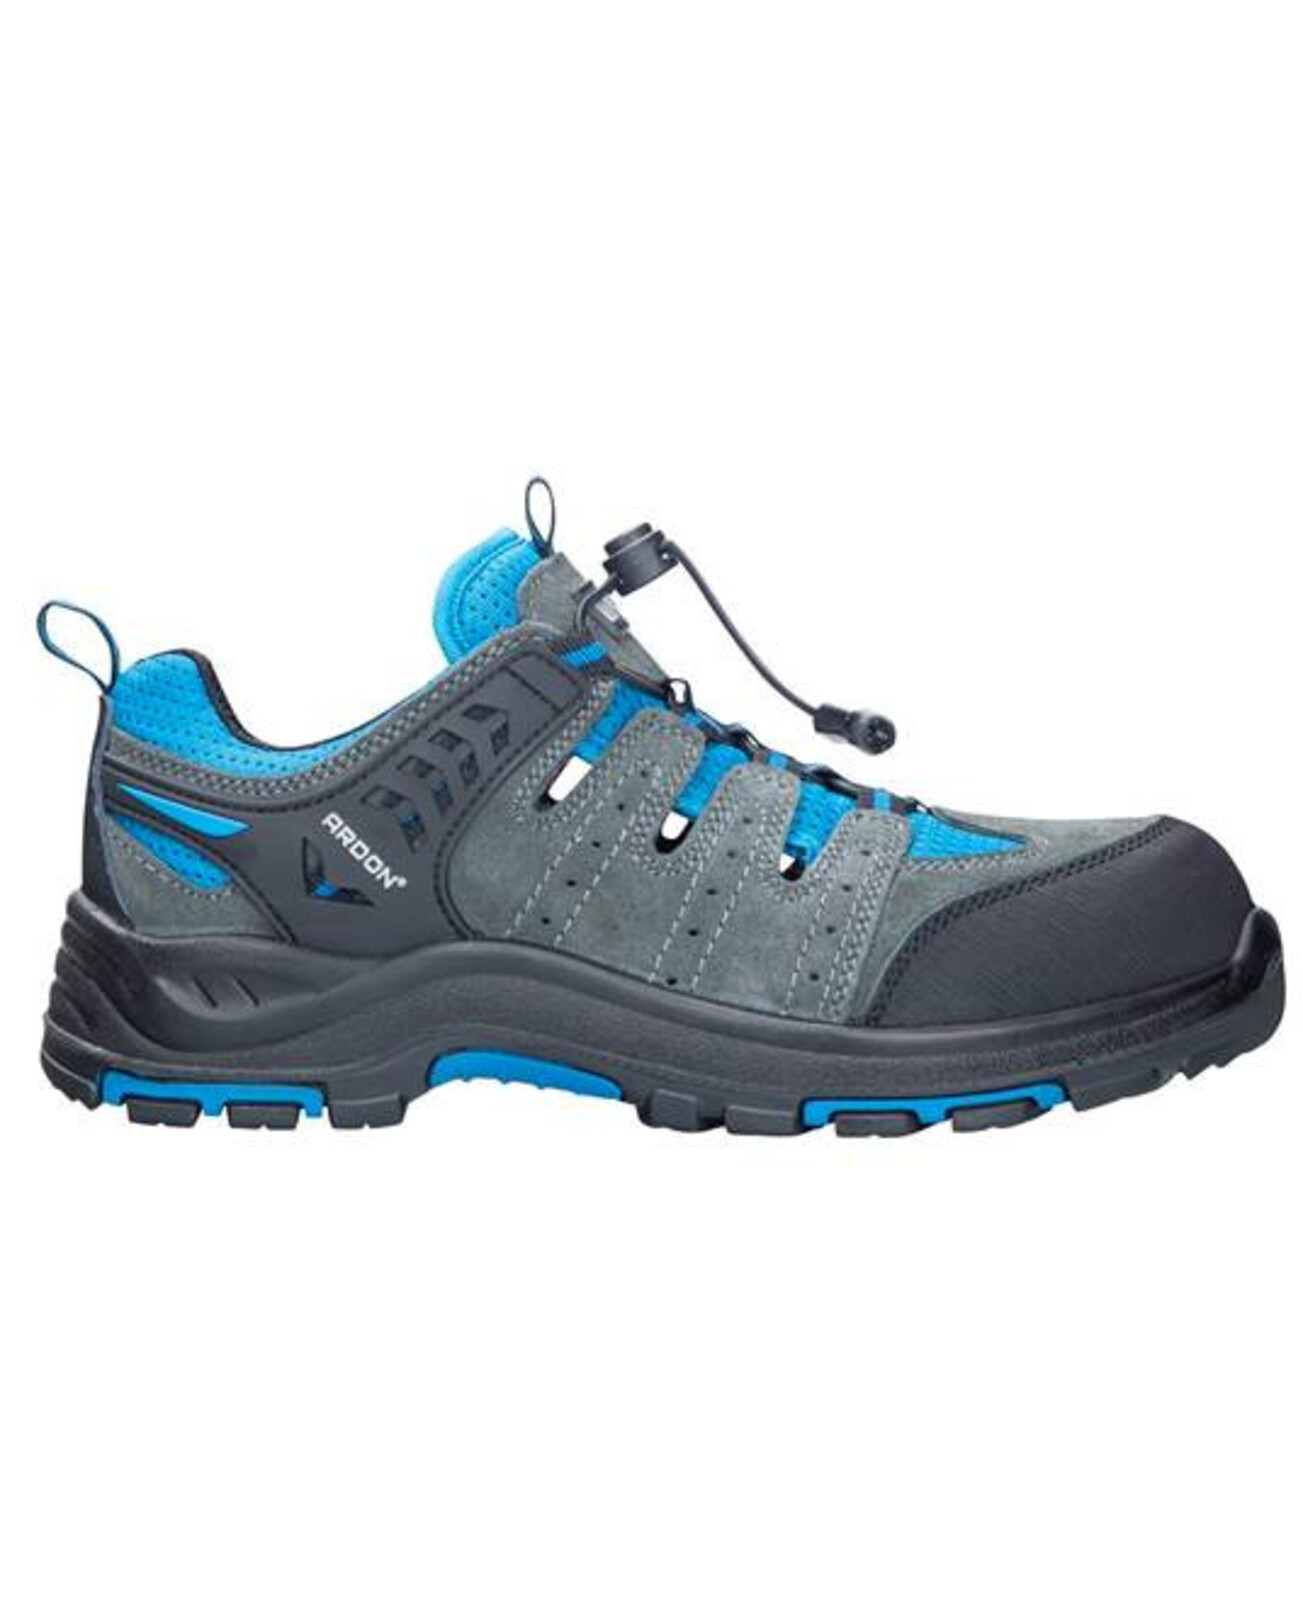 Bezpečnostná obuv ARDON®TRIMMER S1P  - veľkosť: 36, farba: sivá/modrá